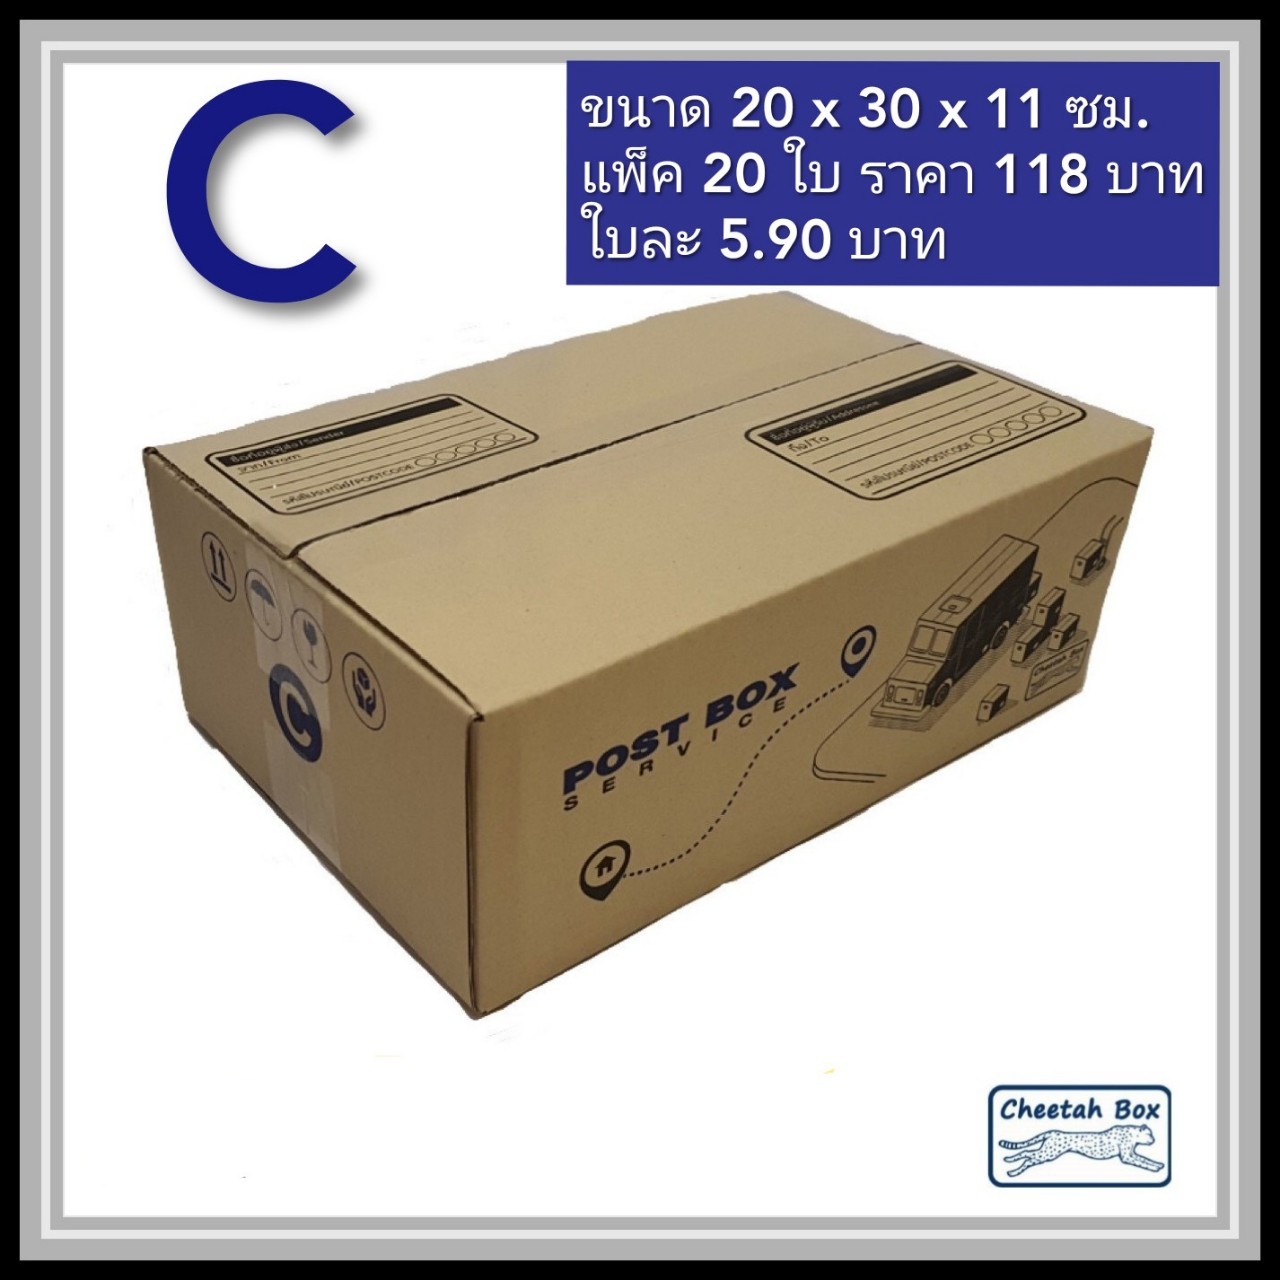 กล่องพัสดุ 3 ชั้น รหัส C พิมพ์ลาย (Cheetah Box) 20W x 30L x 11H cm.